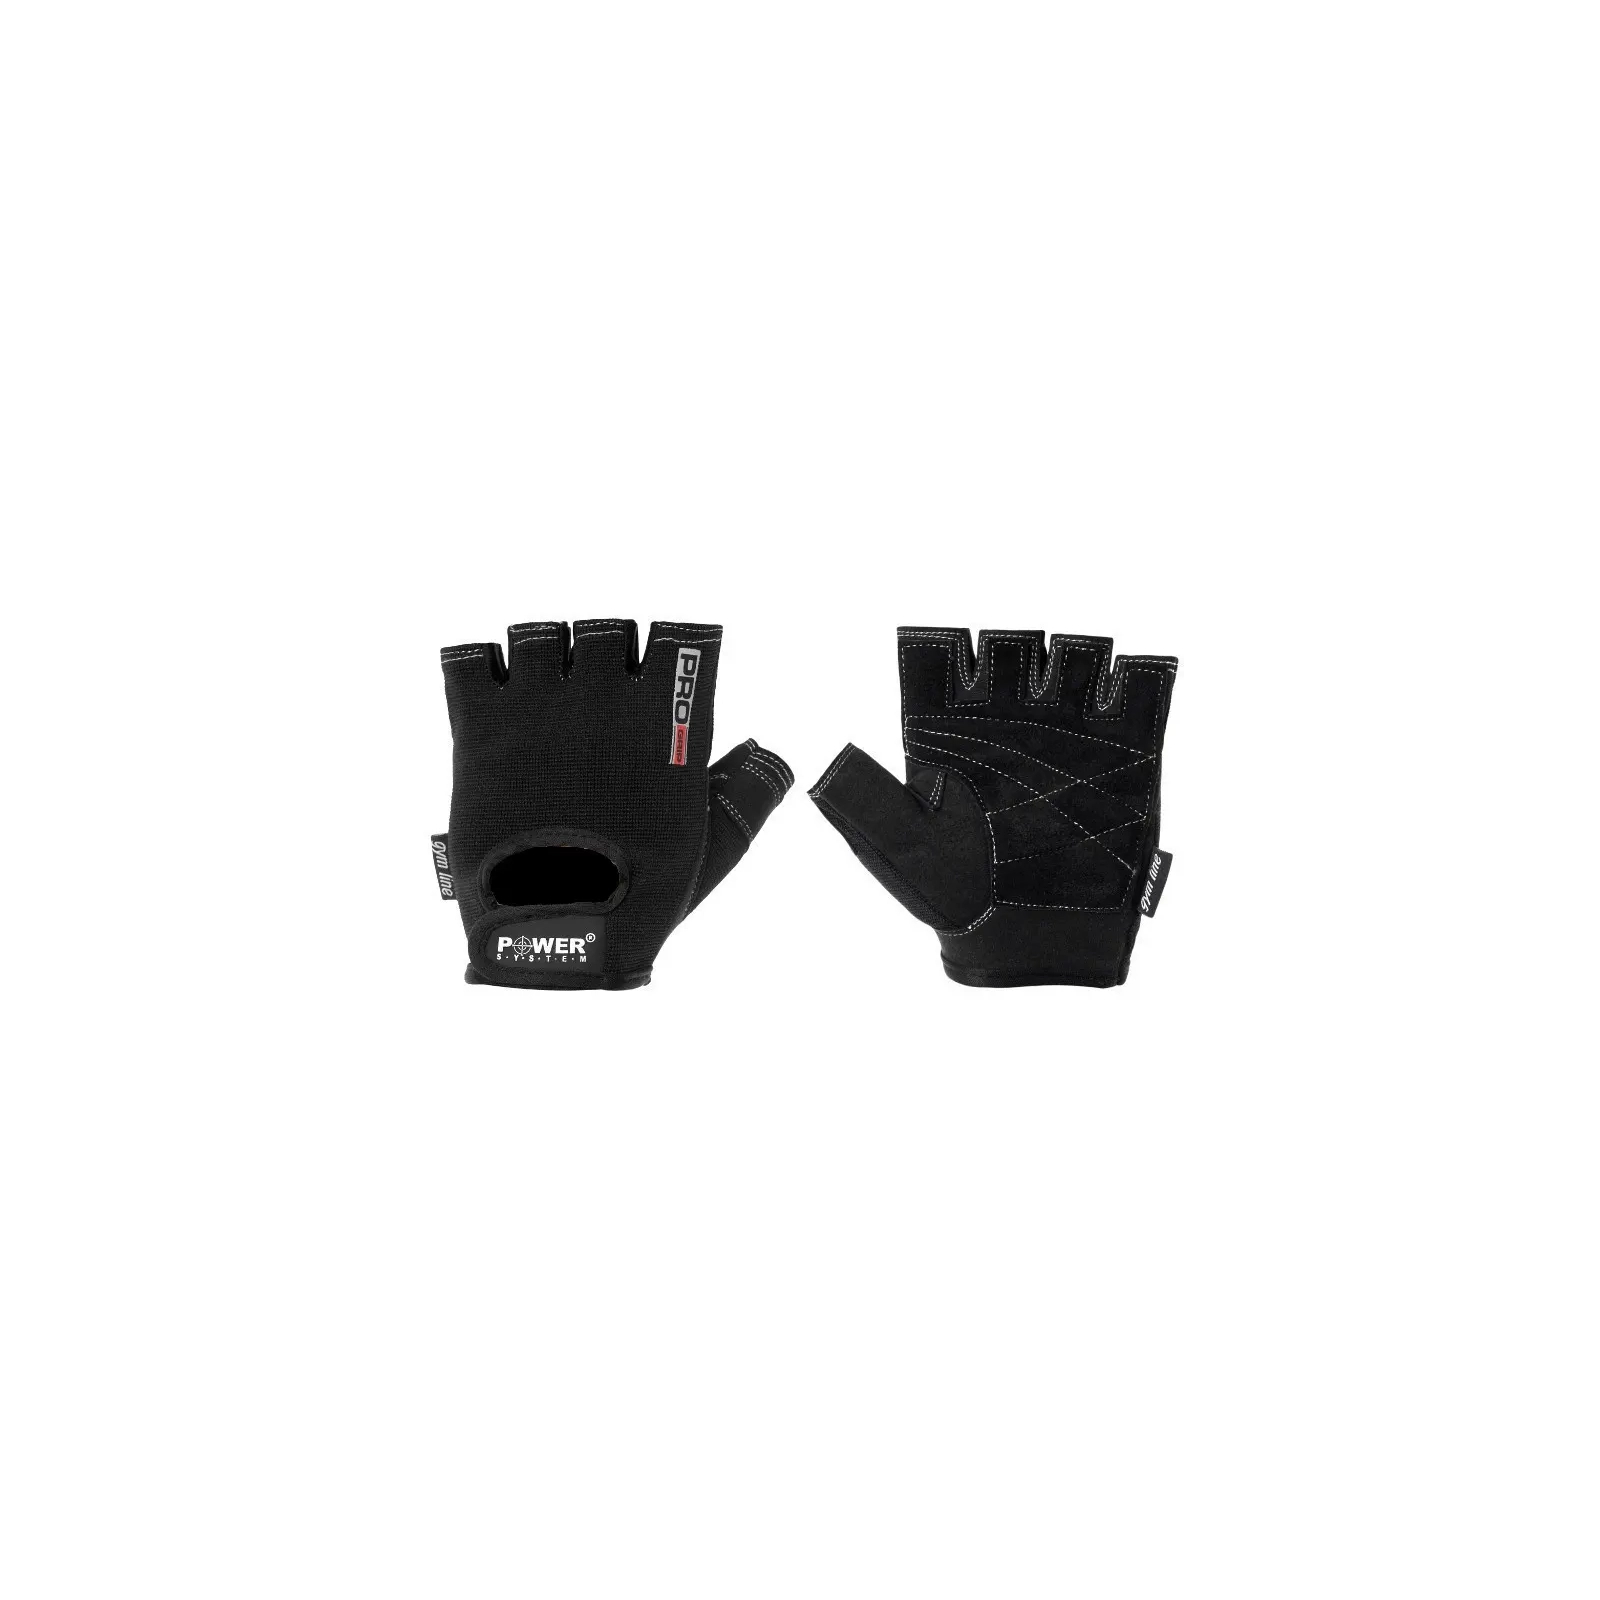 Перчатки для фитнеса Power System Pro Grip PS-2250 XS Pink (PS-2250_XS_Pink) изображение 2